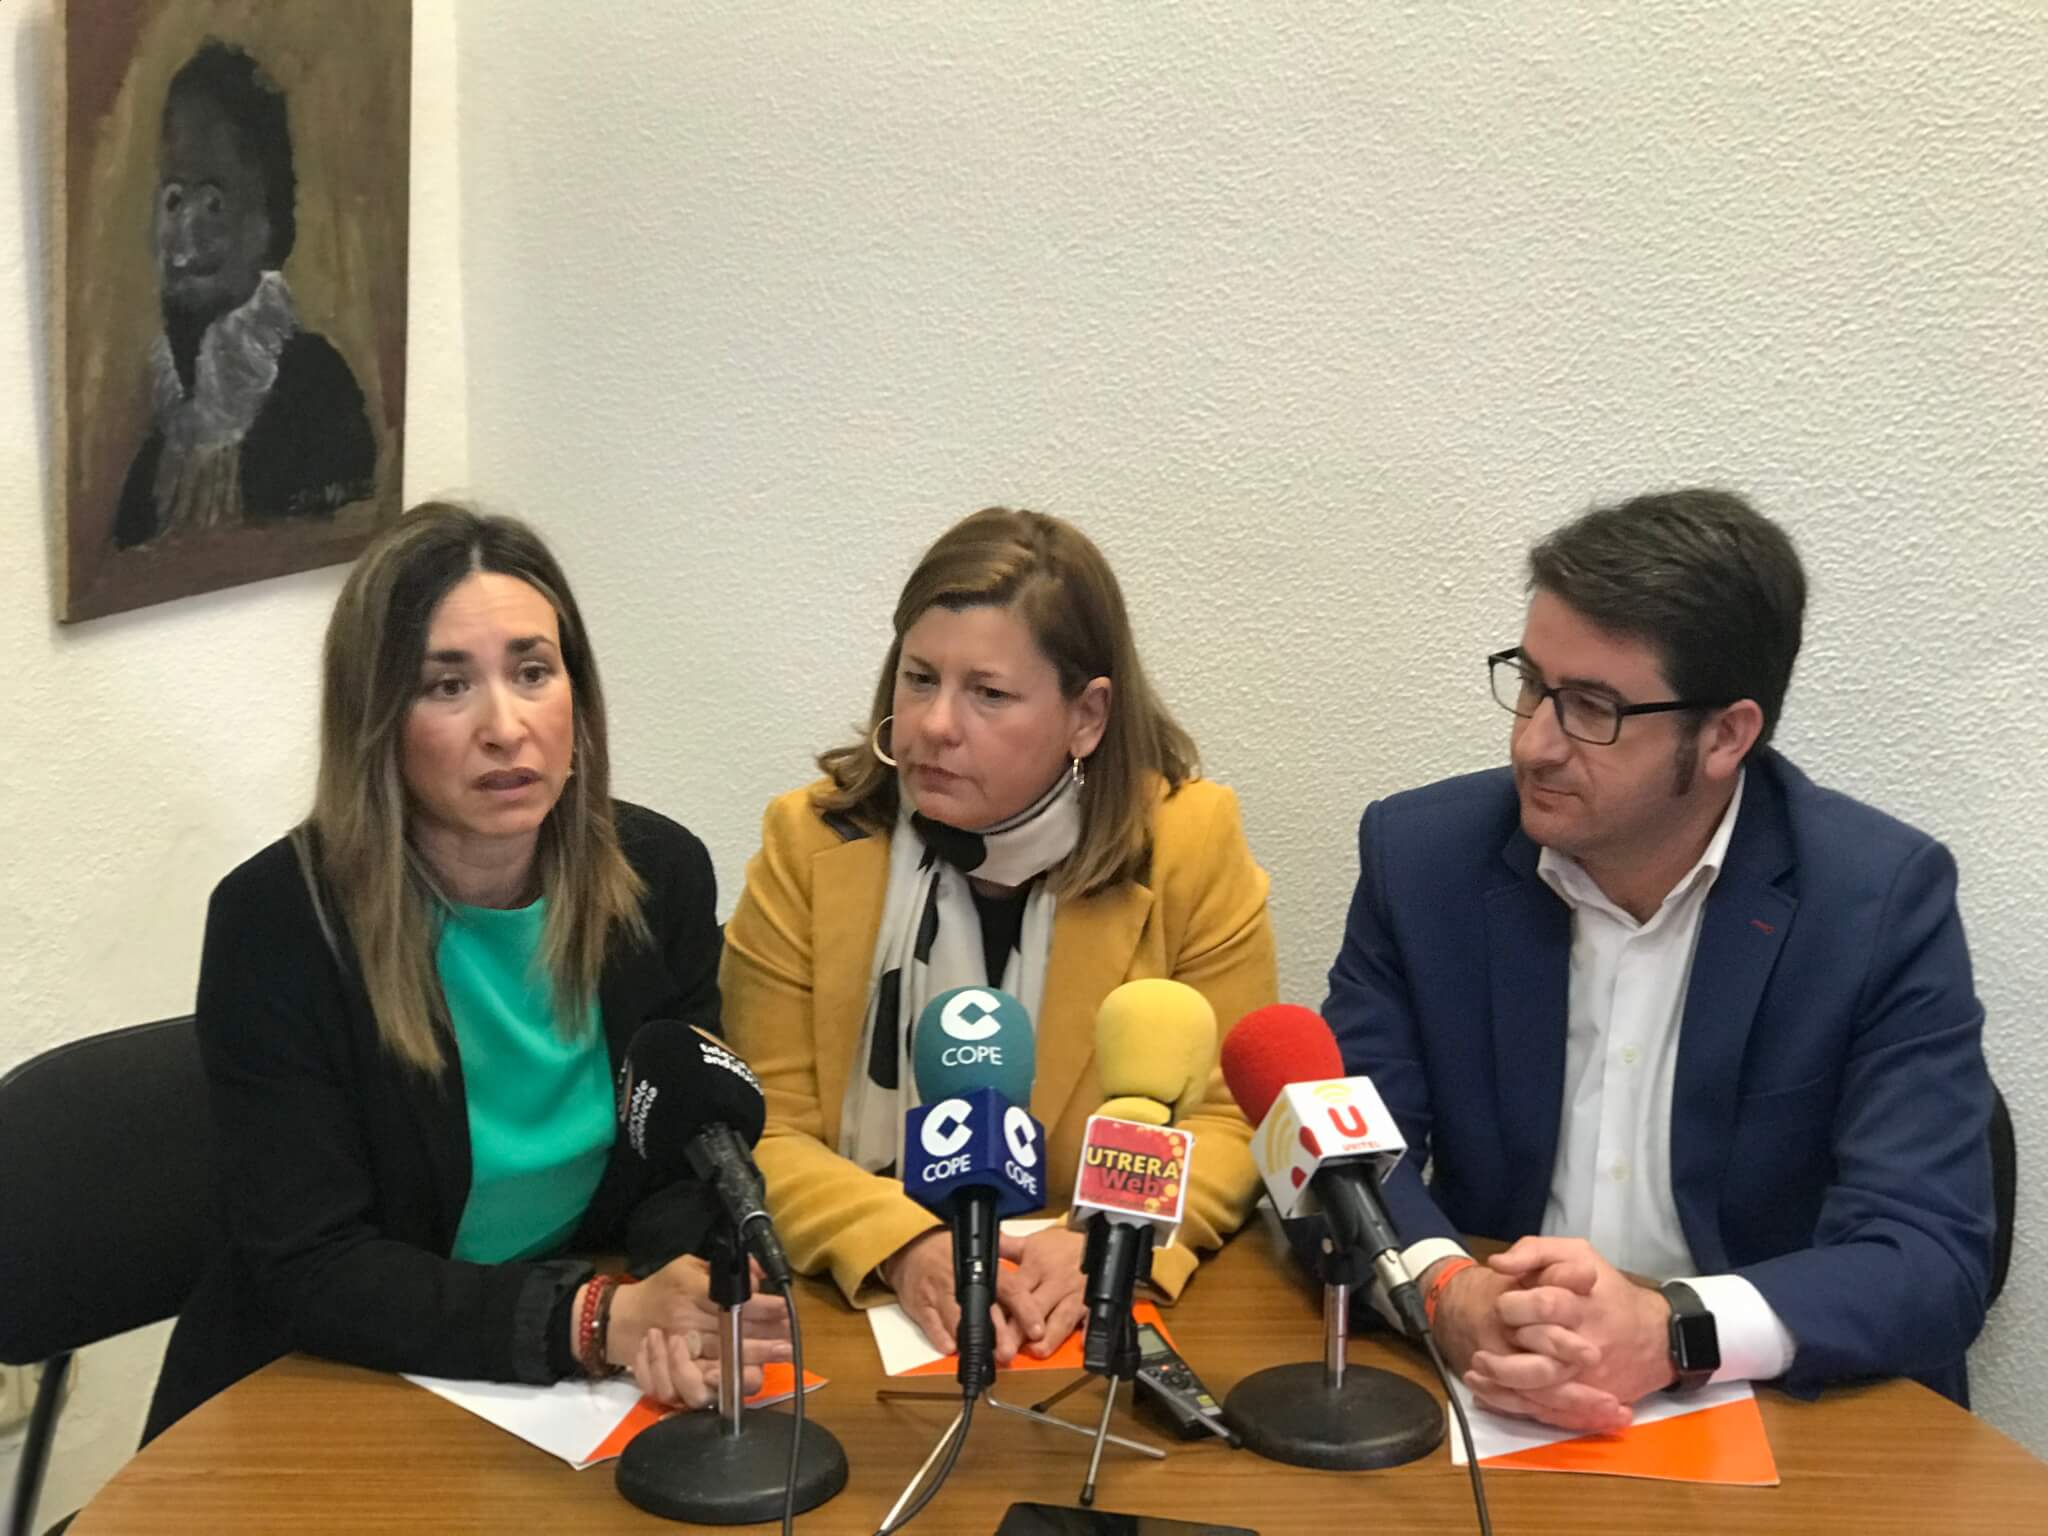 Diputados provinciales de C’s visitan Utrera y anuncian el inicio de la Ciudad de la Justicia sin lugar decidido